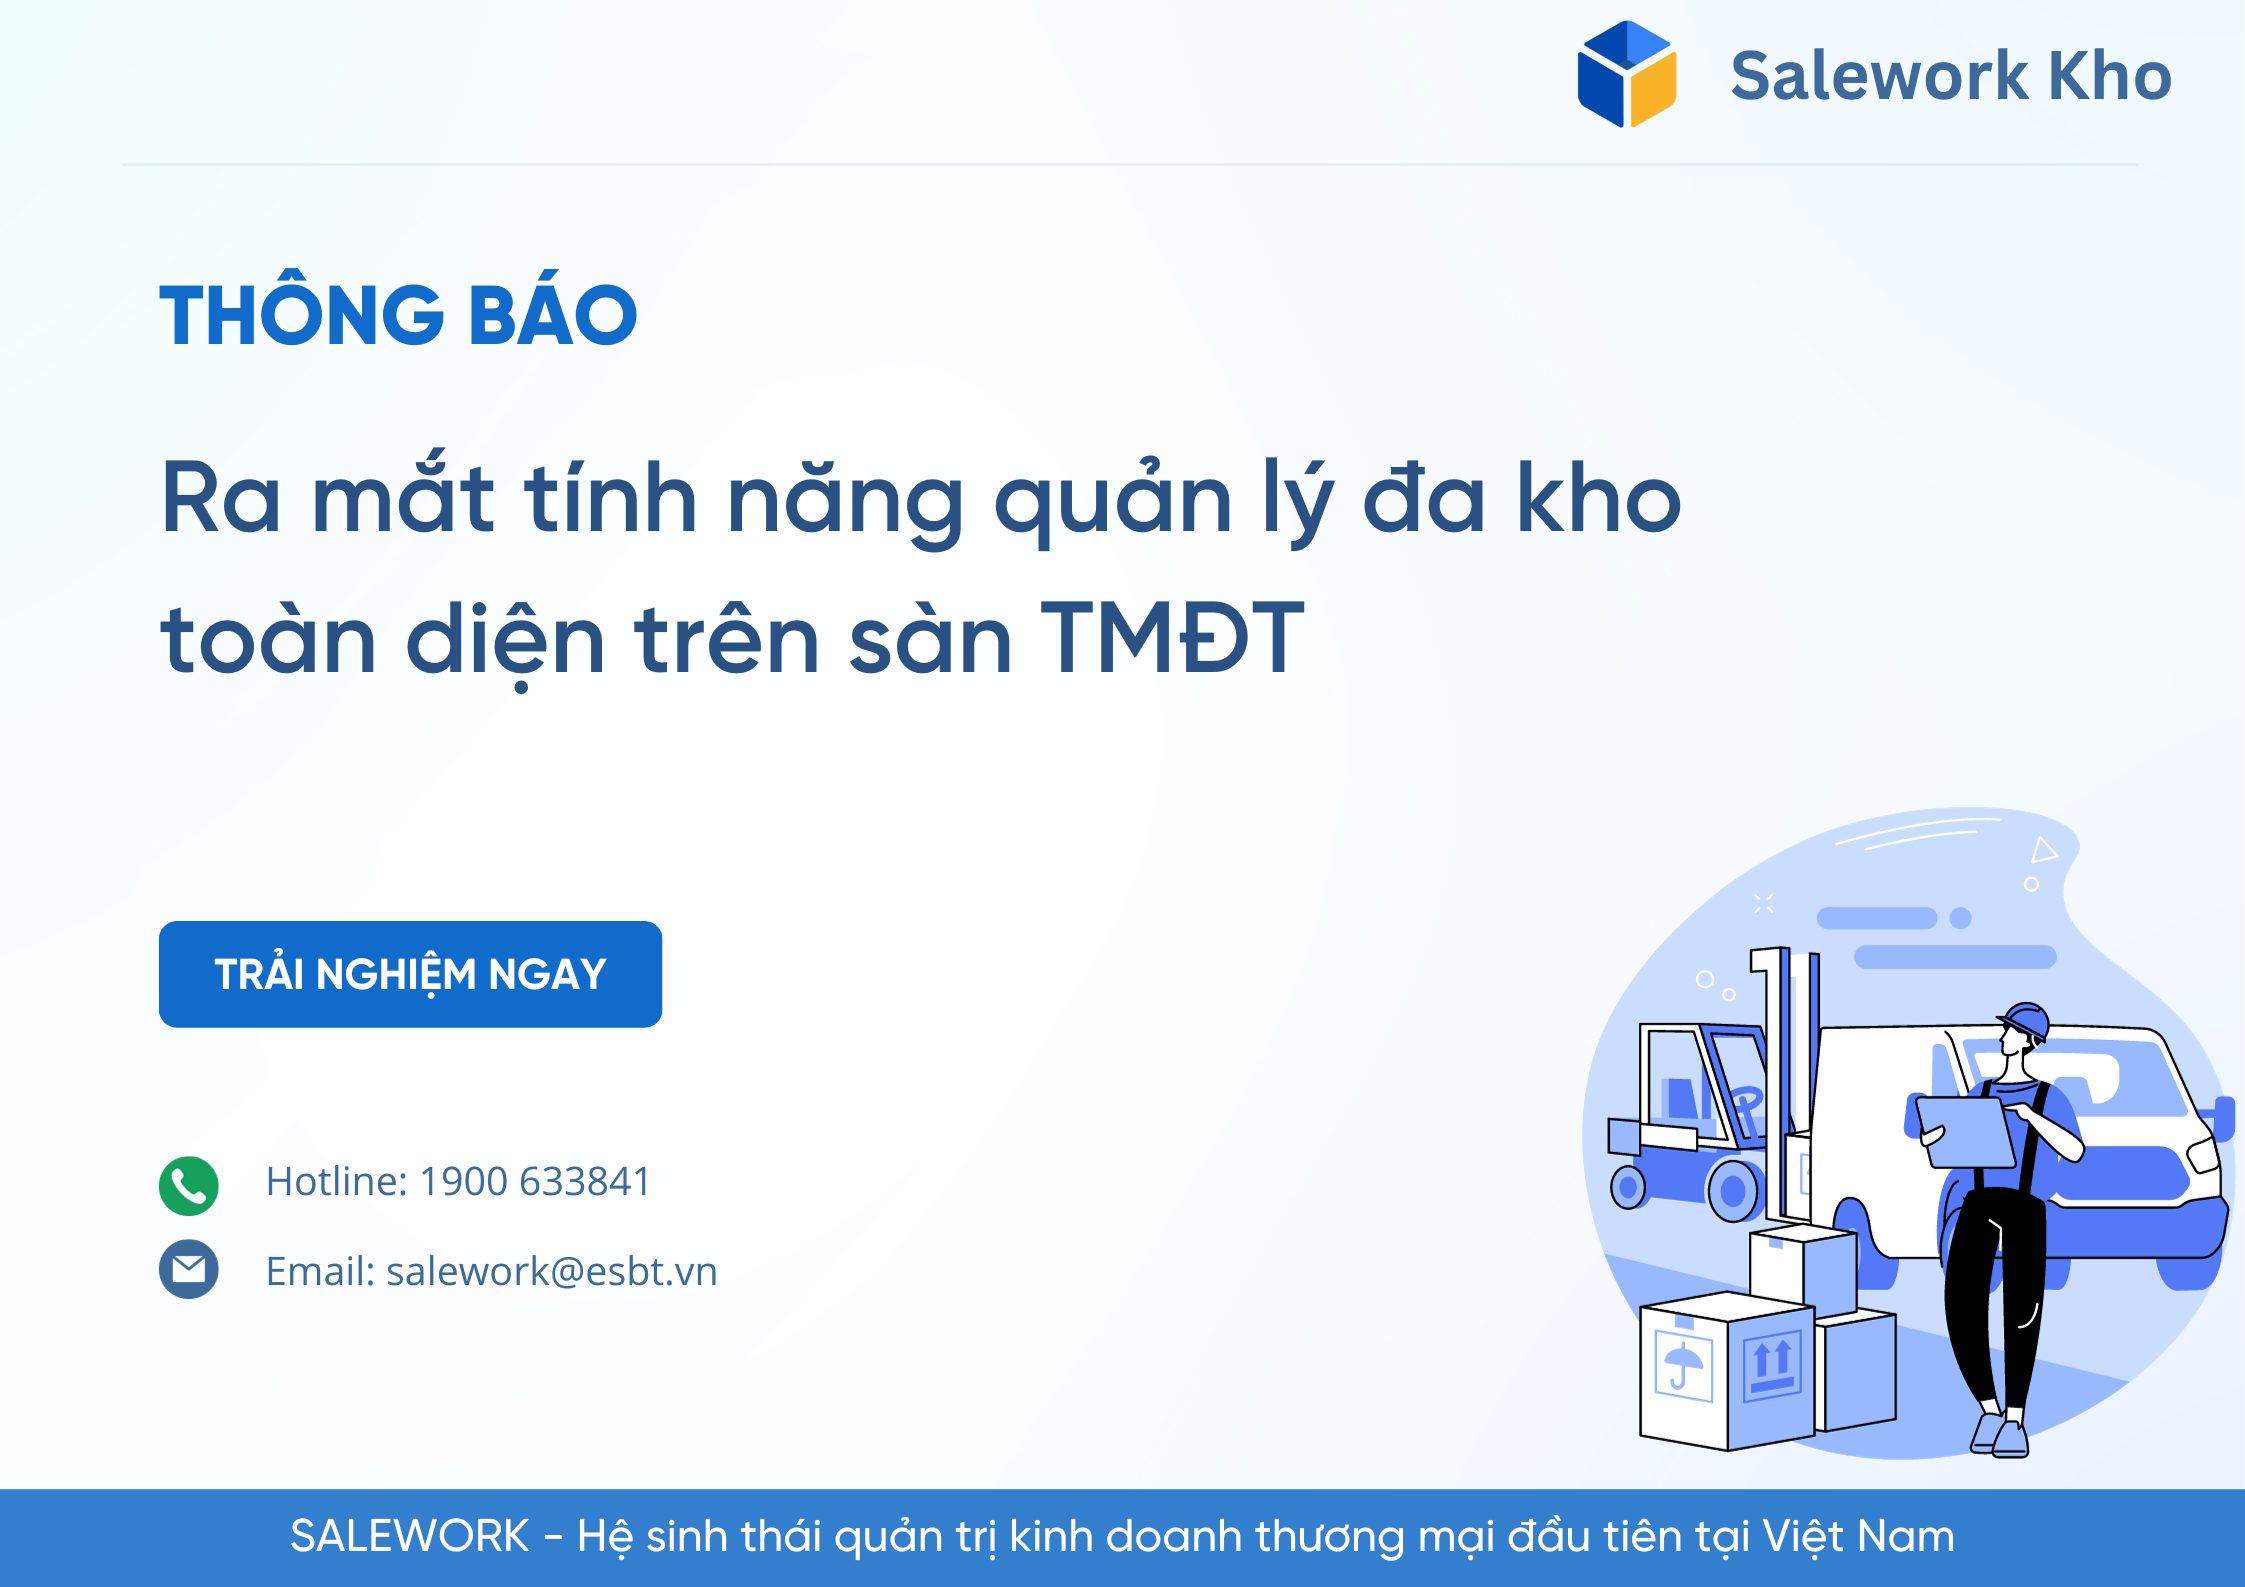 Salework Kho - Phần mềm đầu tiên hỗ trợ tính năng quản lý đa kho toàn diện trên sàn TMĐT - 10